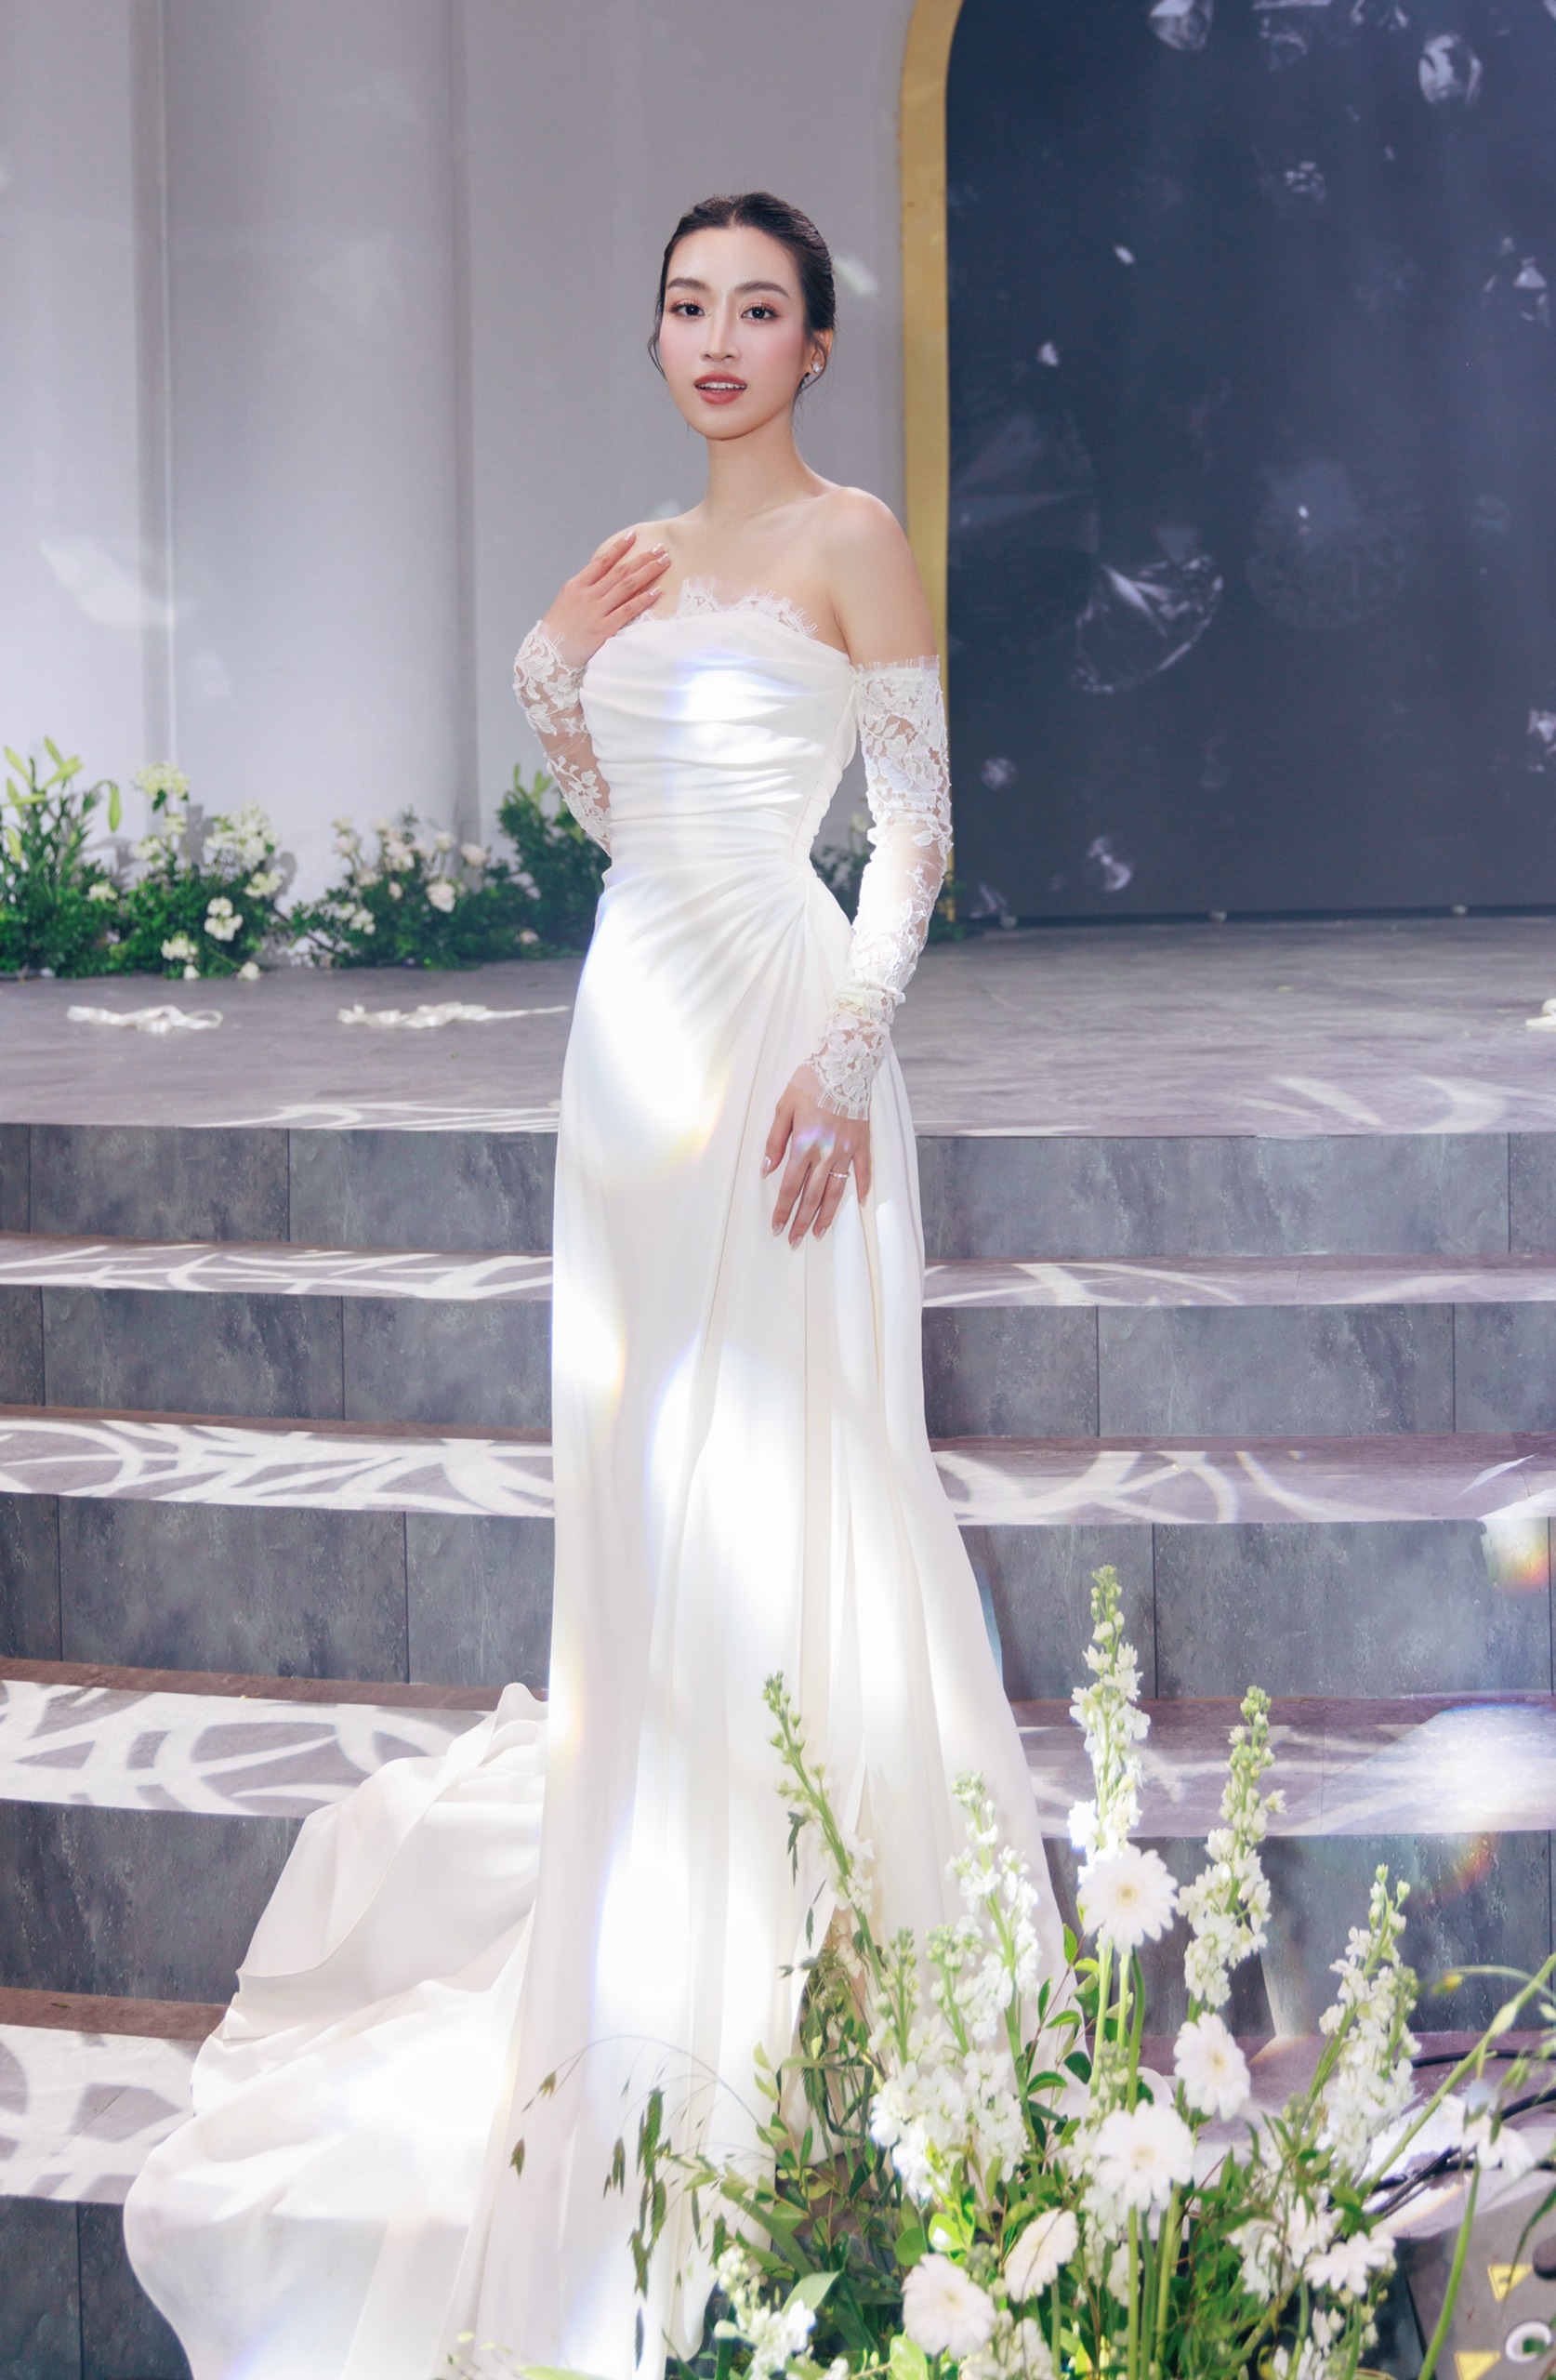 Hoa hậu Đỗ Mỹ Linh trở thành biểu tượng cô dâu thời đại mới với những tuyệt tác váy cưới từ NTK Phương Linh - Ảnh 2.